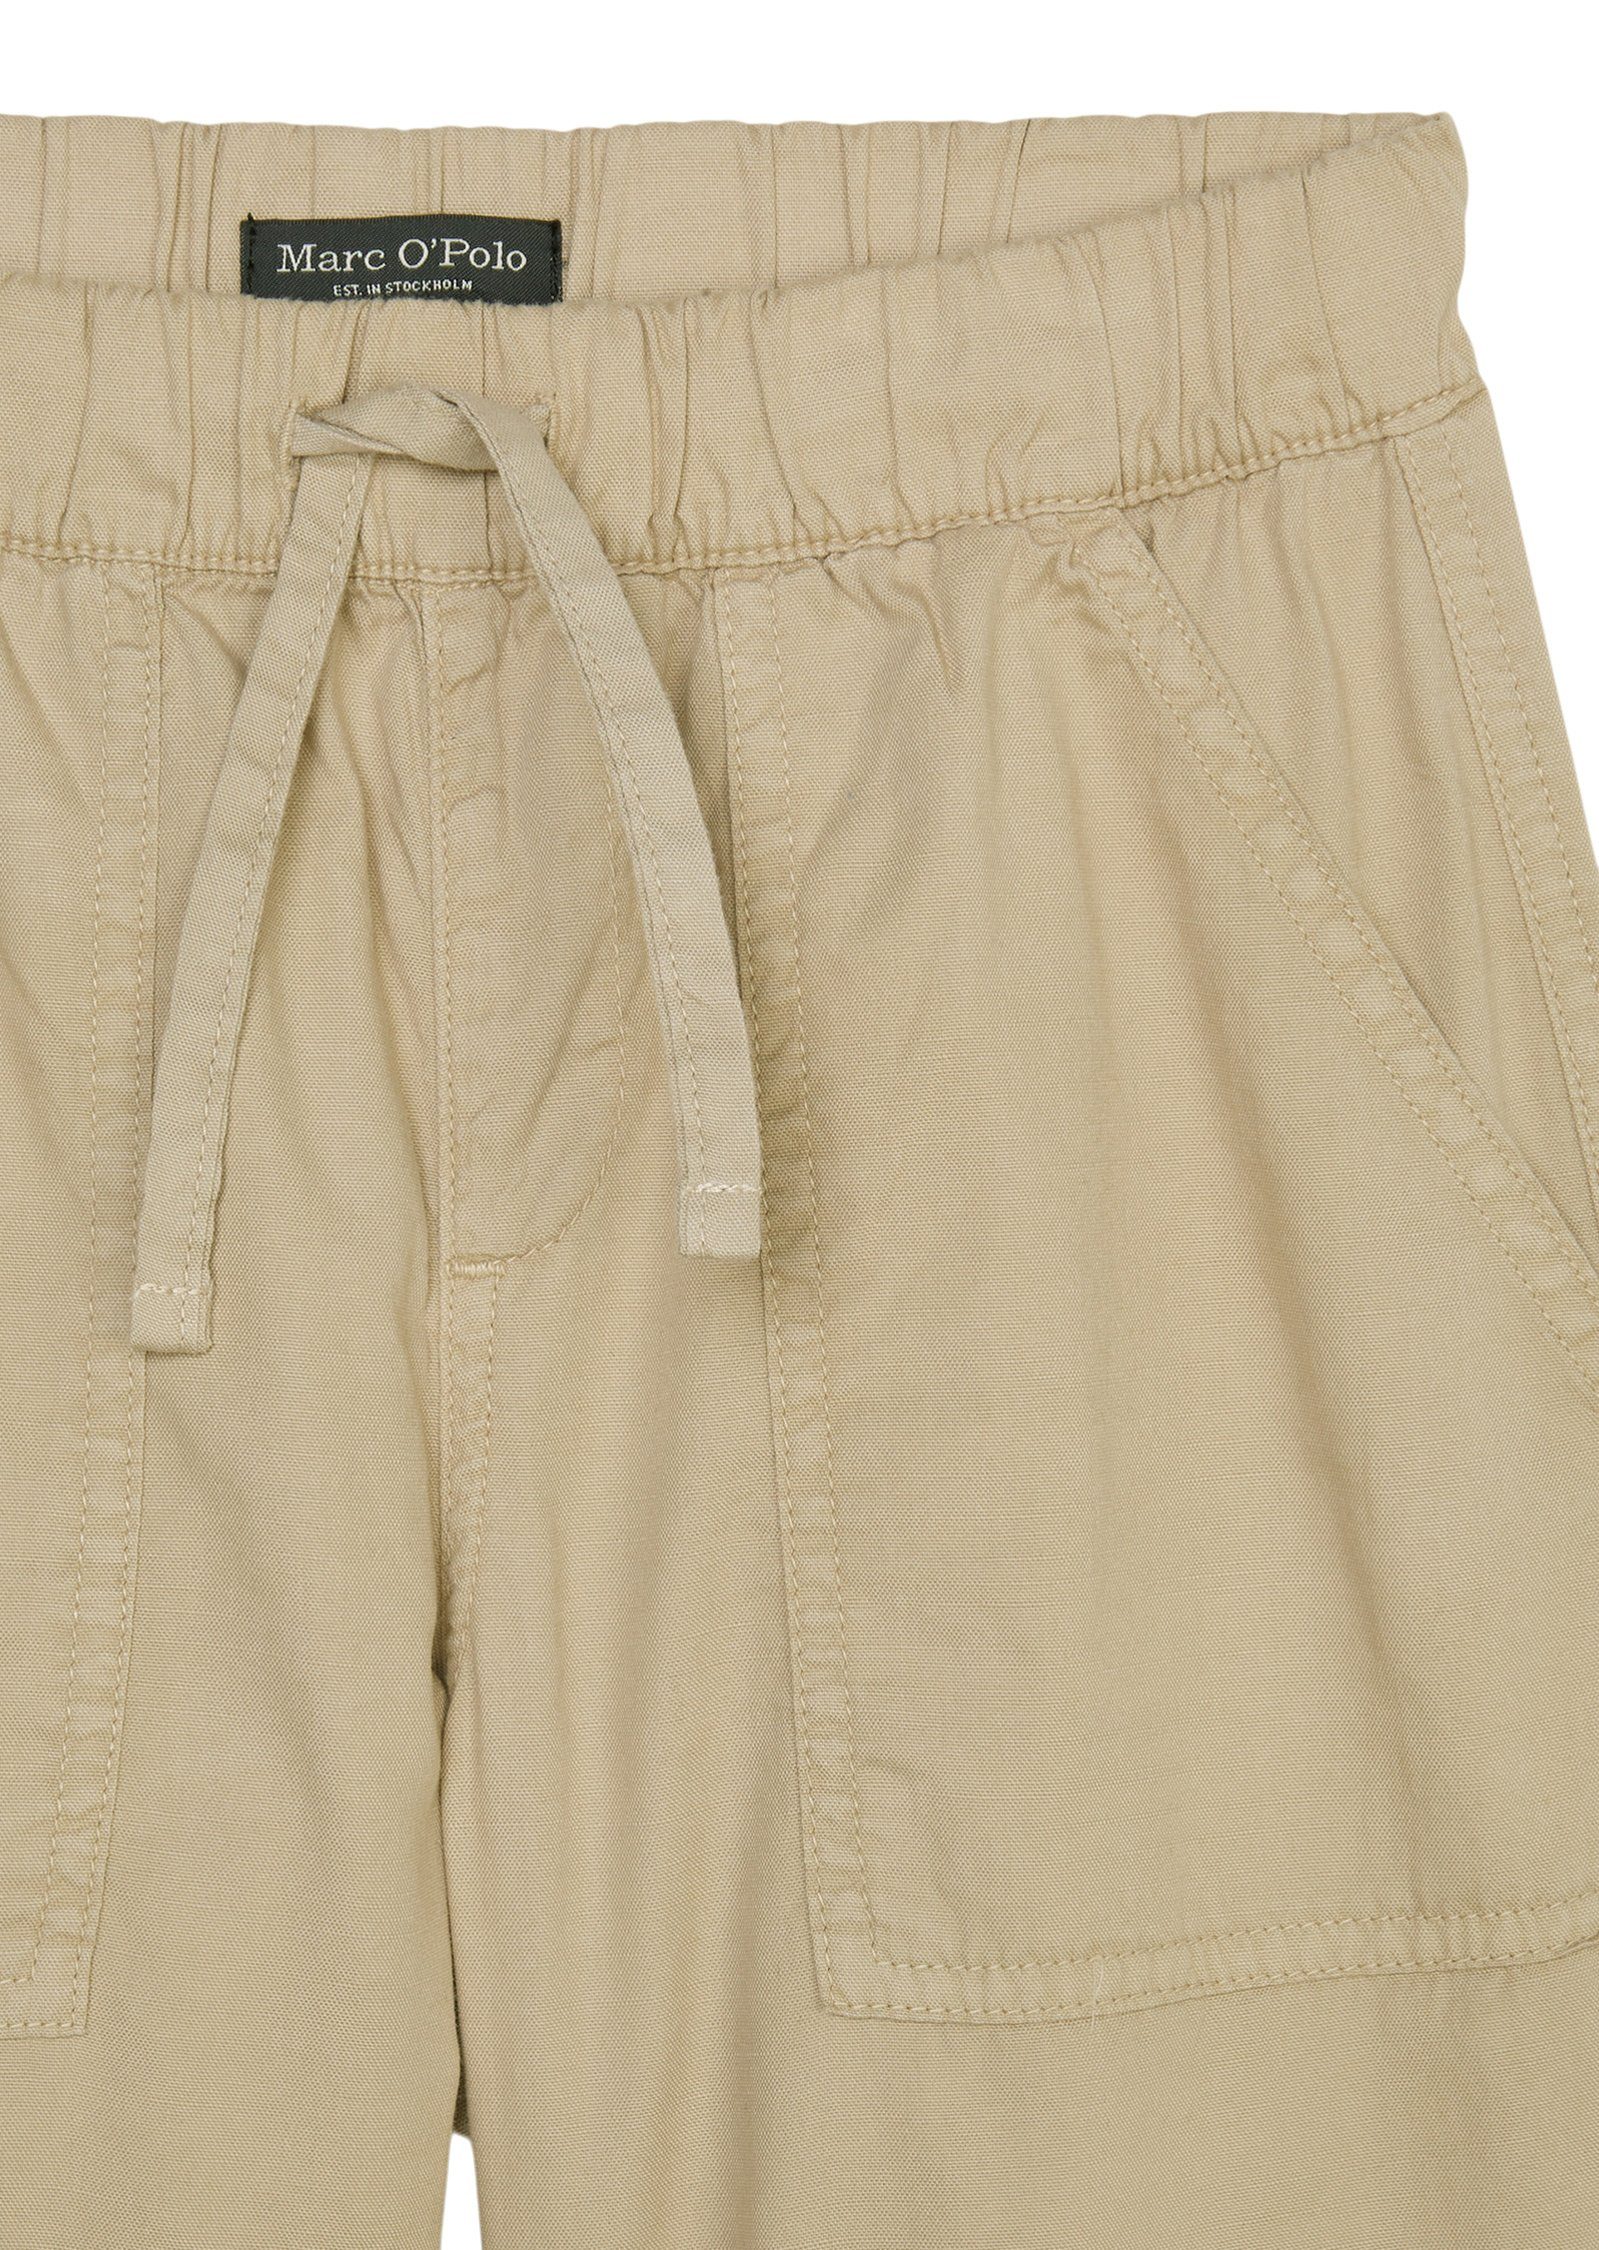 O'Polo Marc Bio-Baumwolle Shorts aus reiner